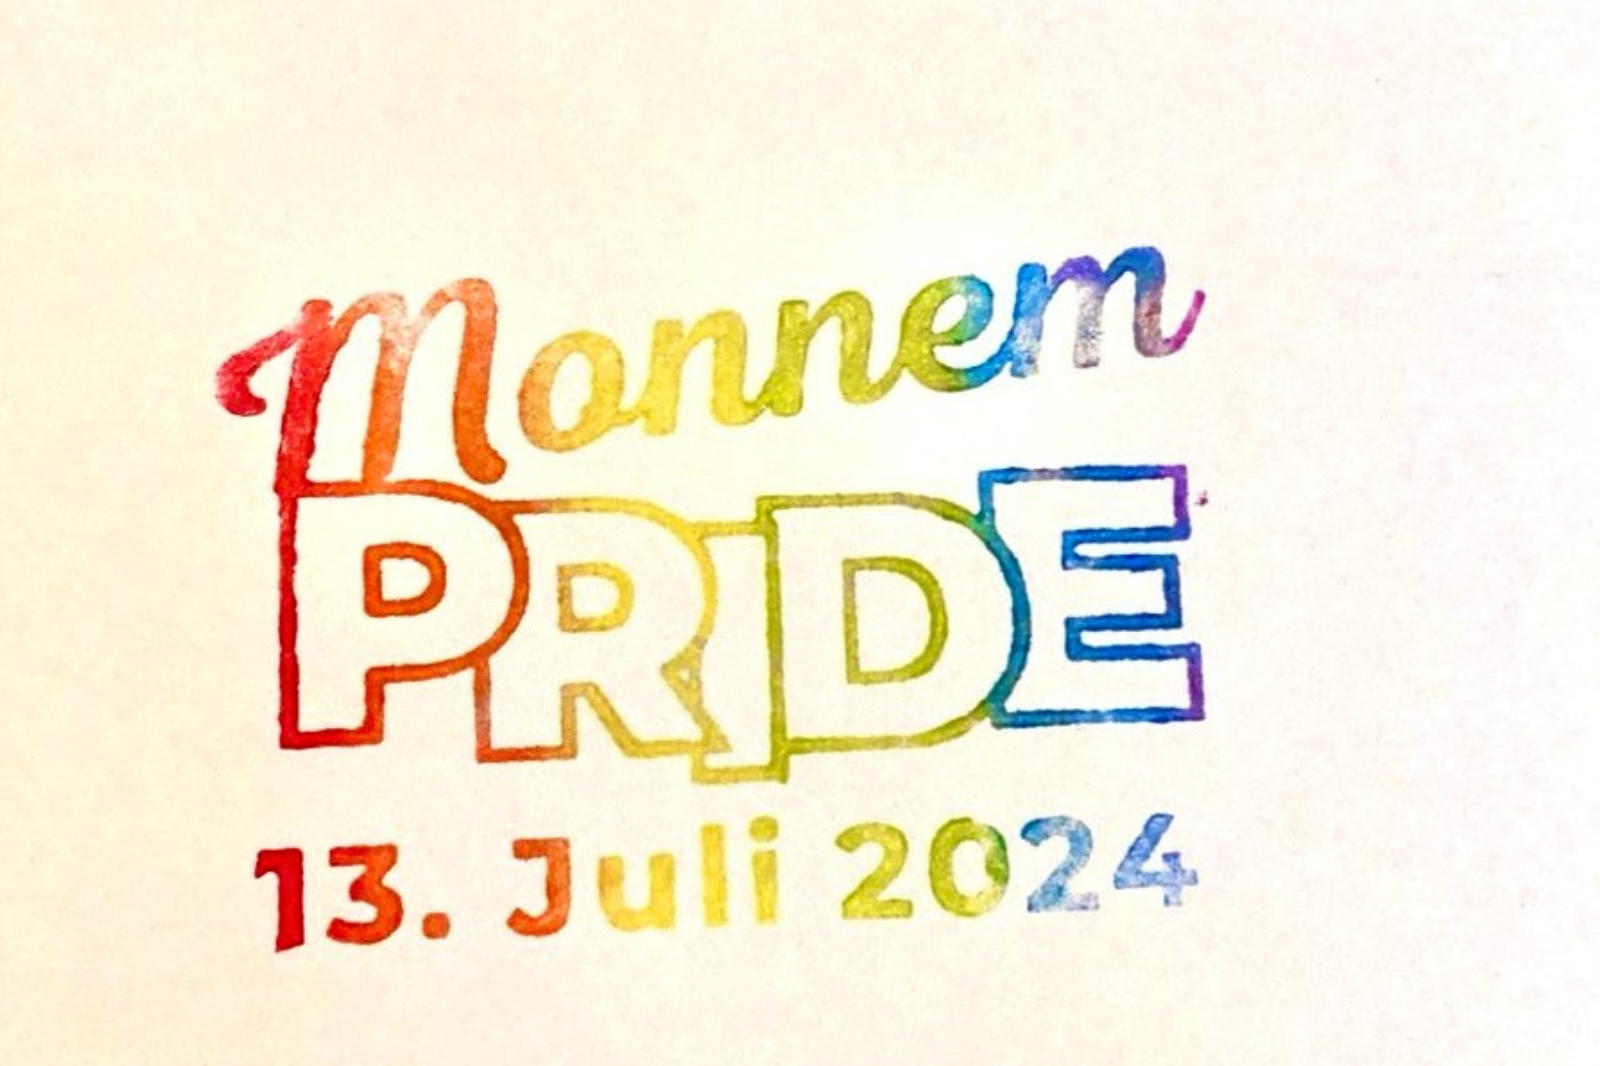 Auf dem Bild ist ein regenbogen-farbener Stempel zu sehen, auf dem "Monnem PRIDE 13. Juli 2024" steht. Der Hintergrund ist cremefarben.